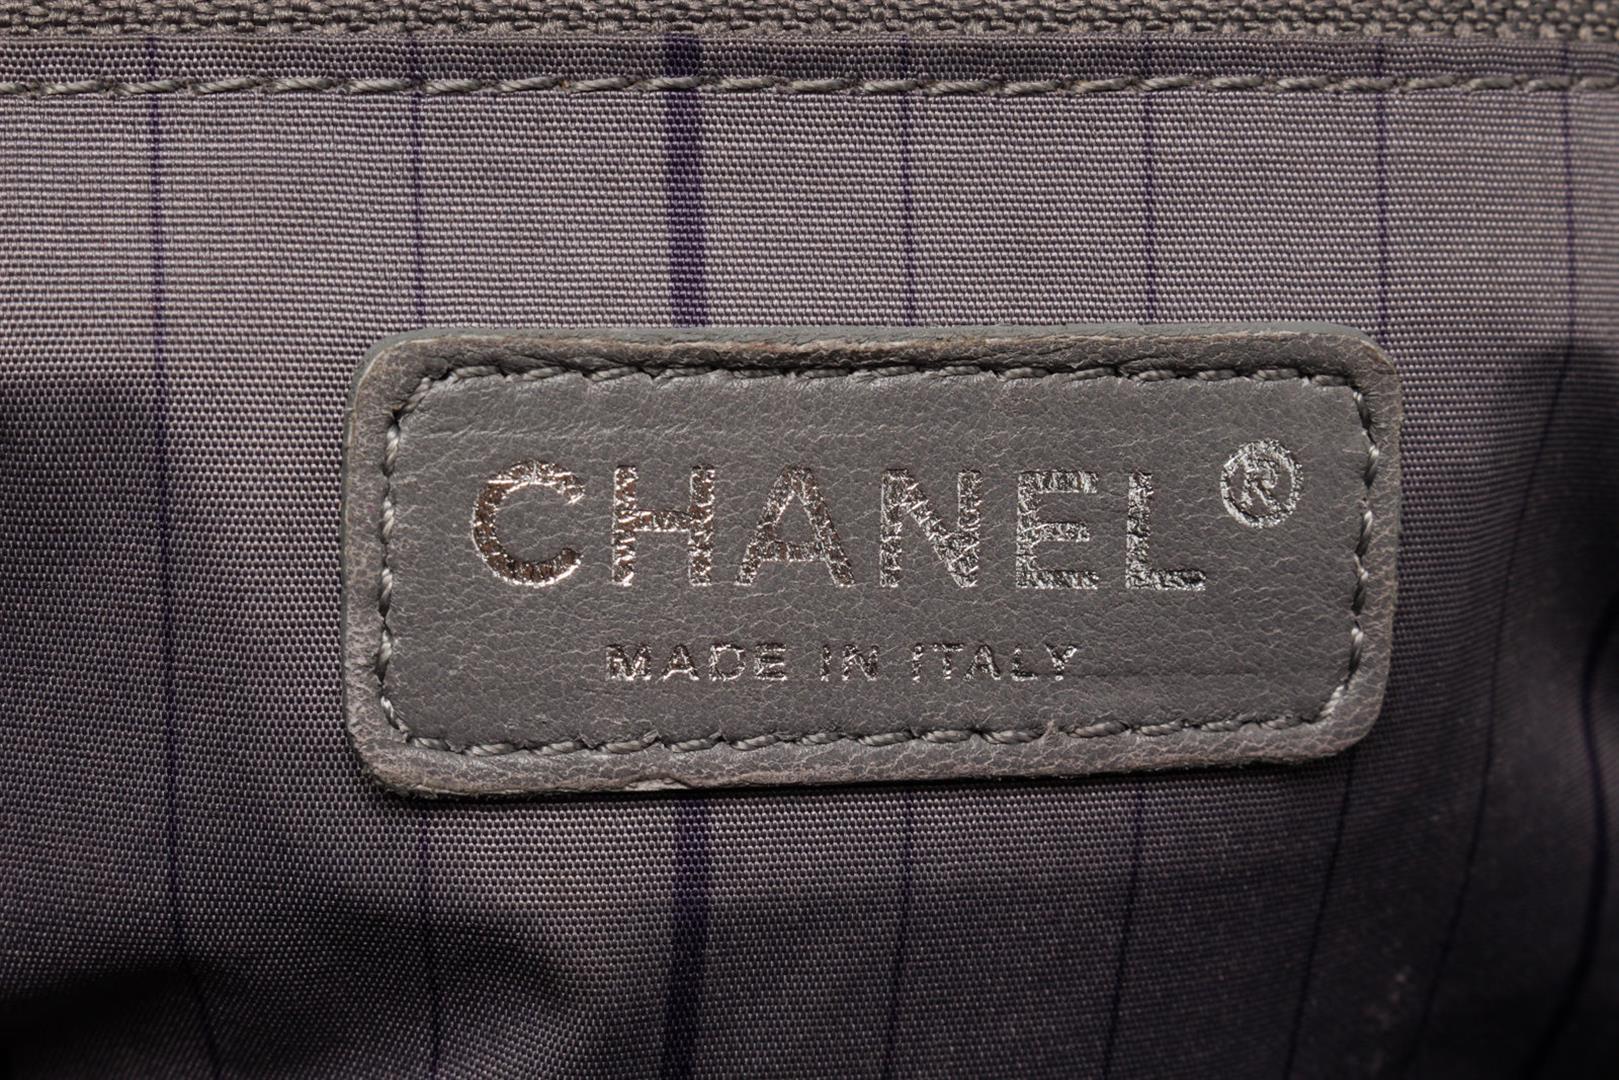 Chanel Black Canvas Leather Twisted Tweed Shoulder Bag